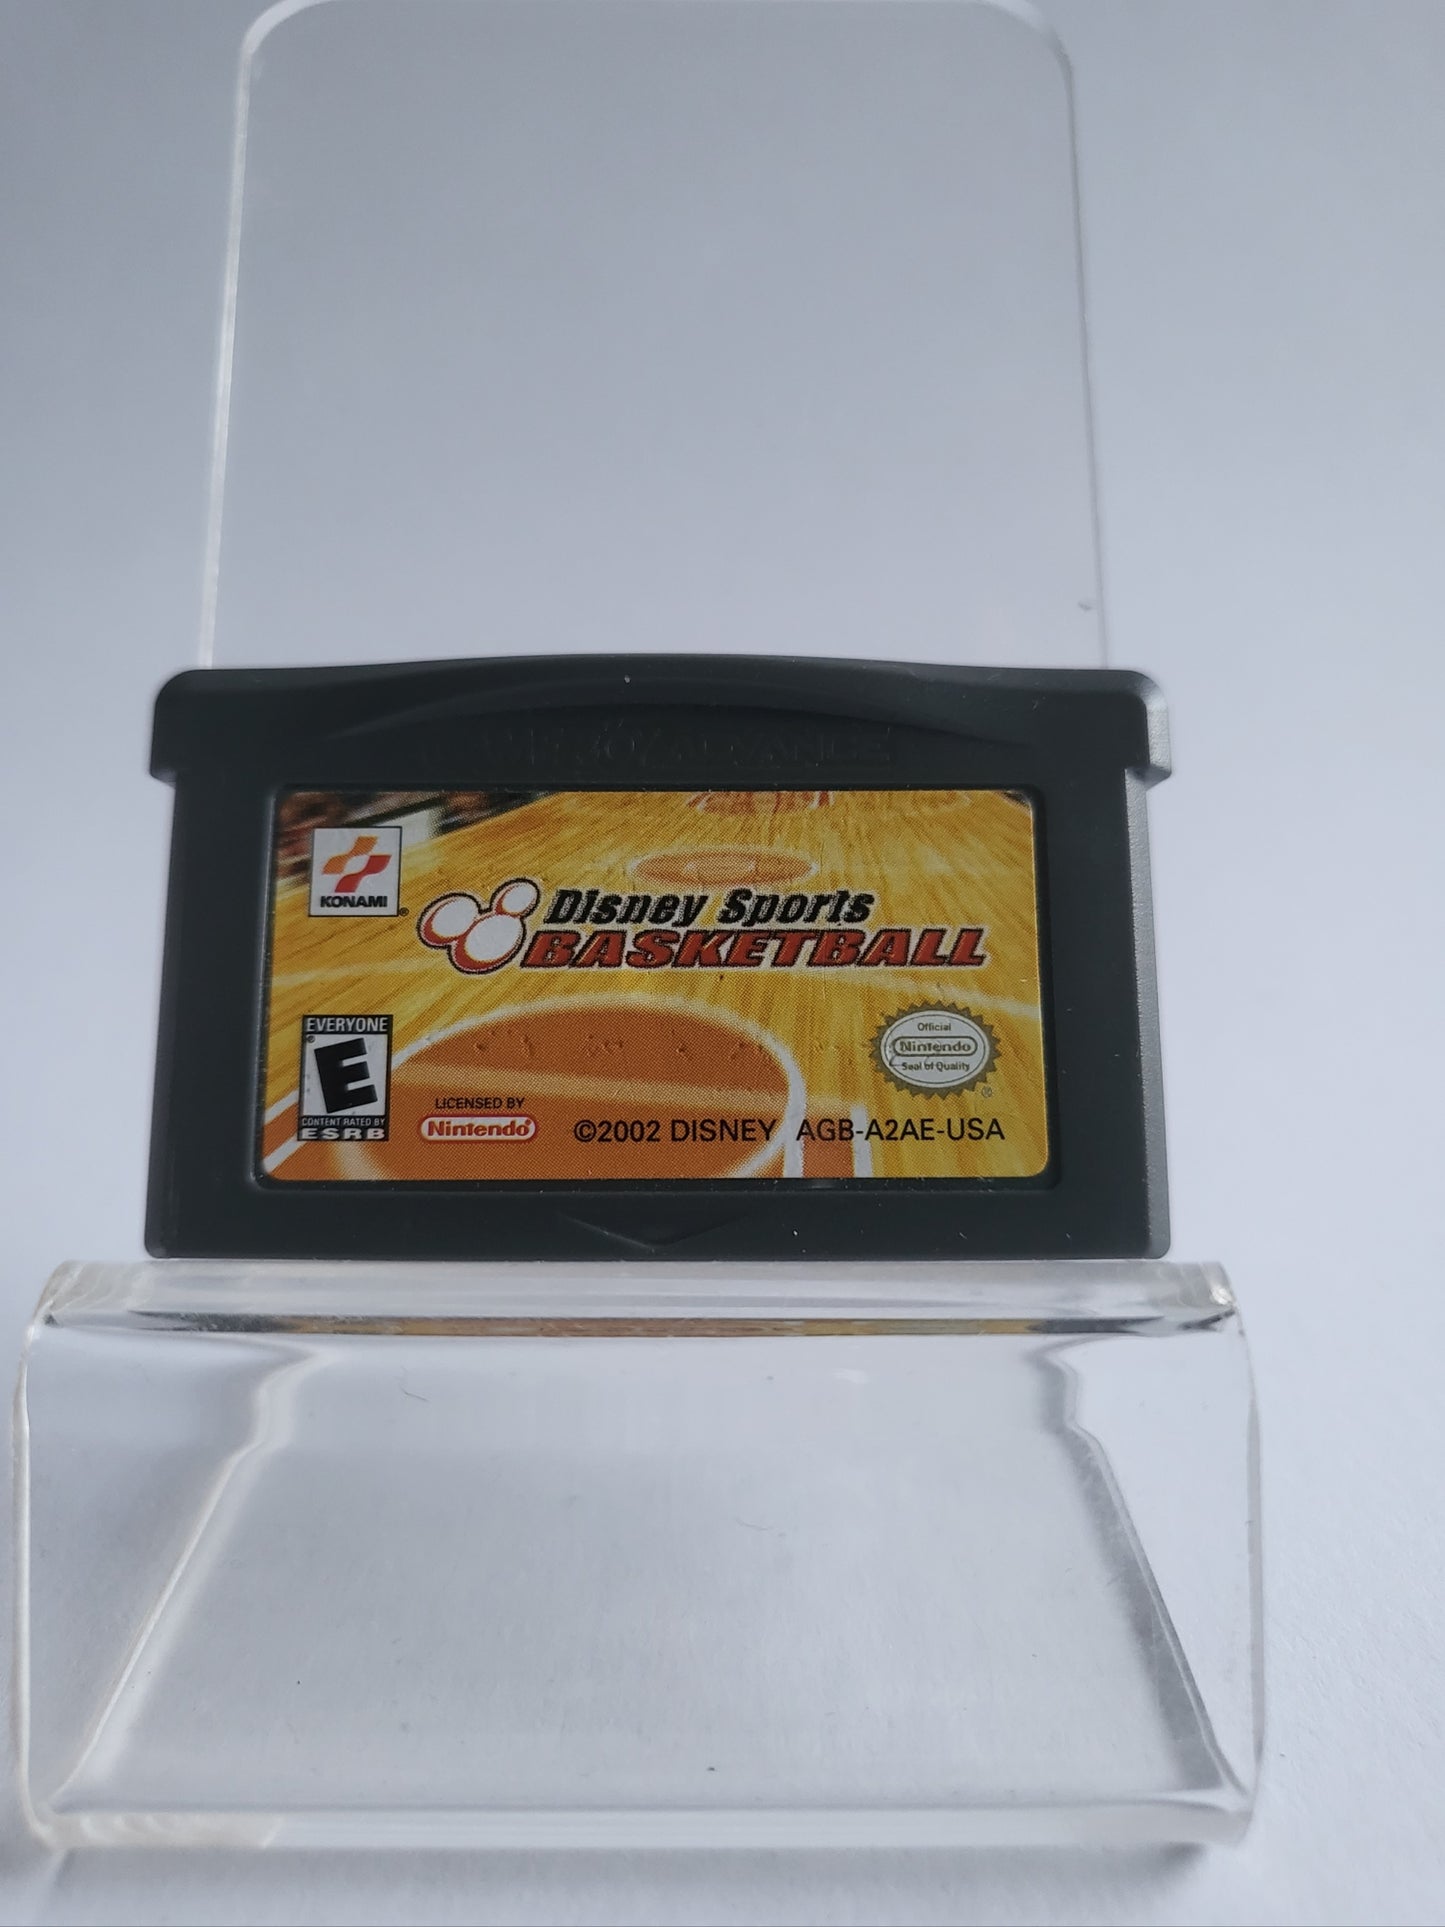 Disney Sports Basketball Game Boy Advance